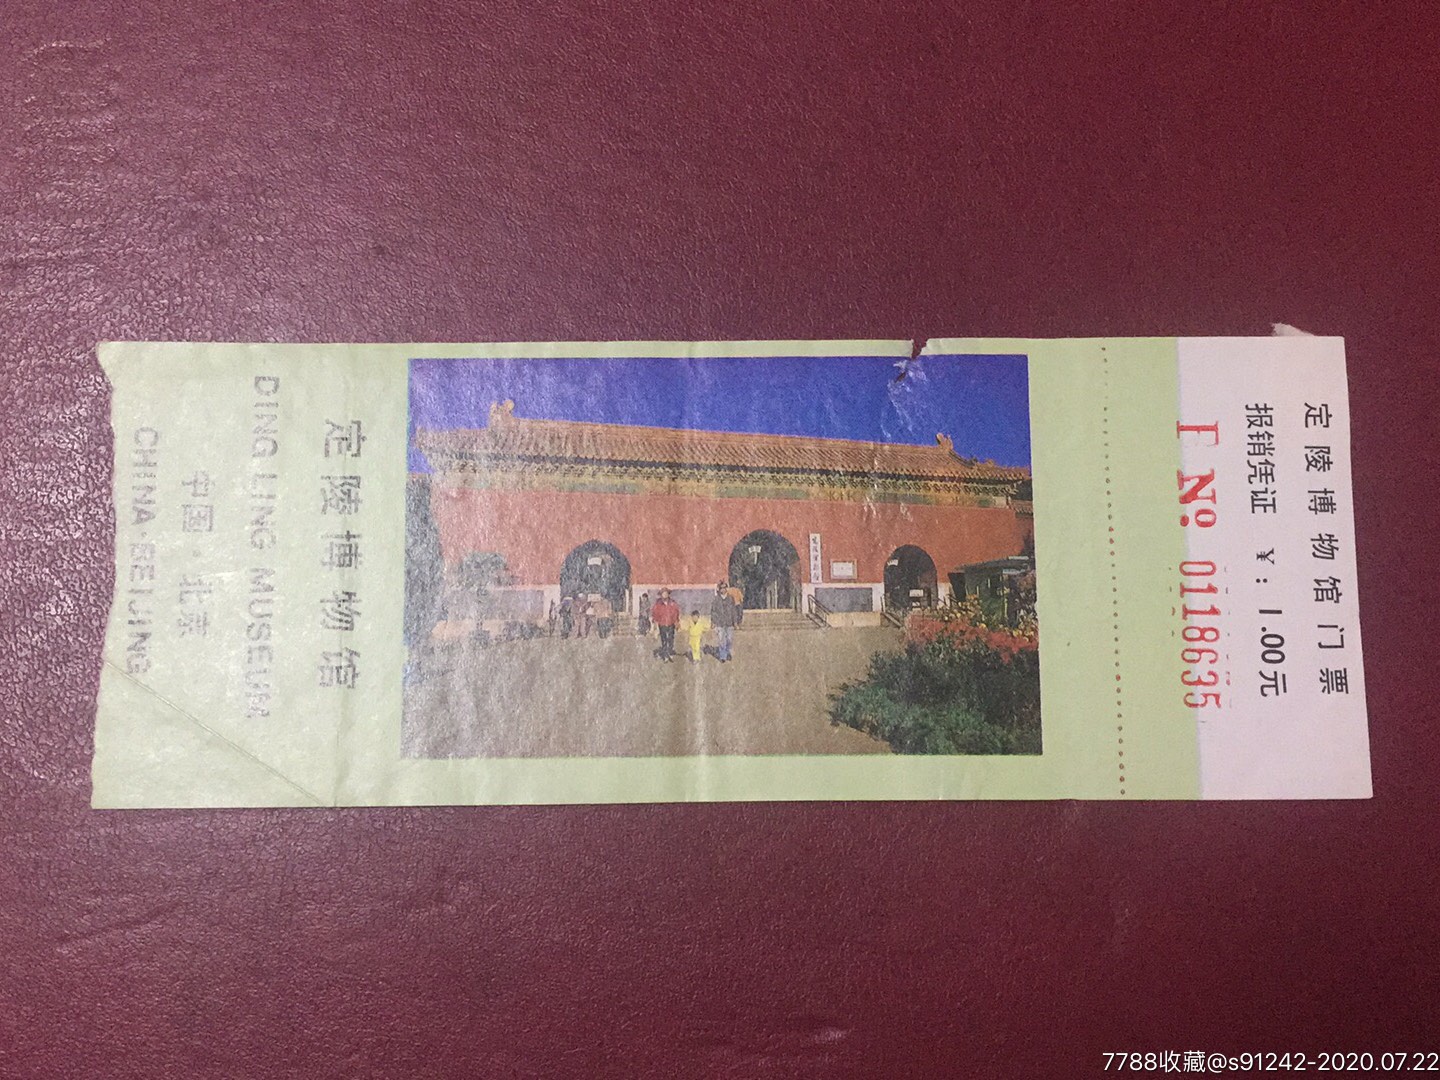 定陵博物馆门票图片